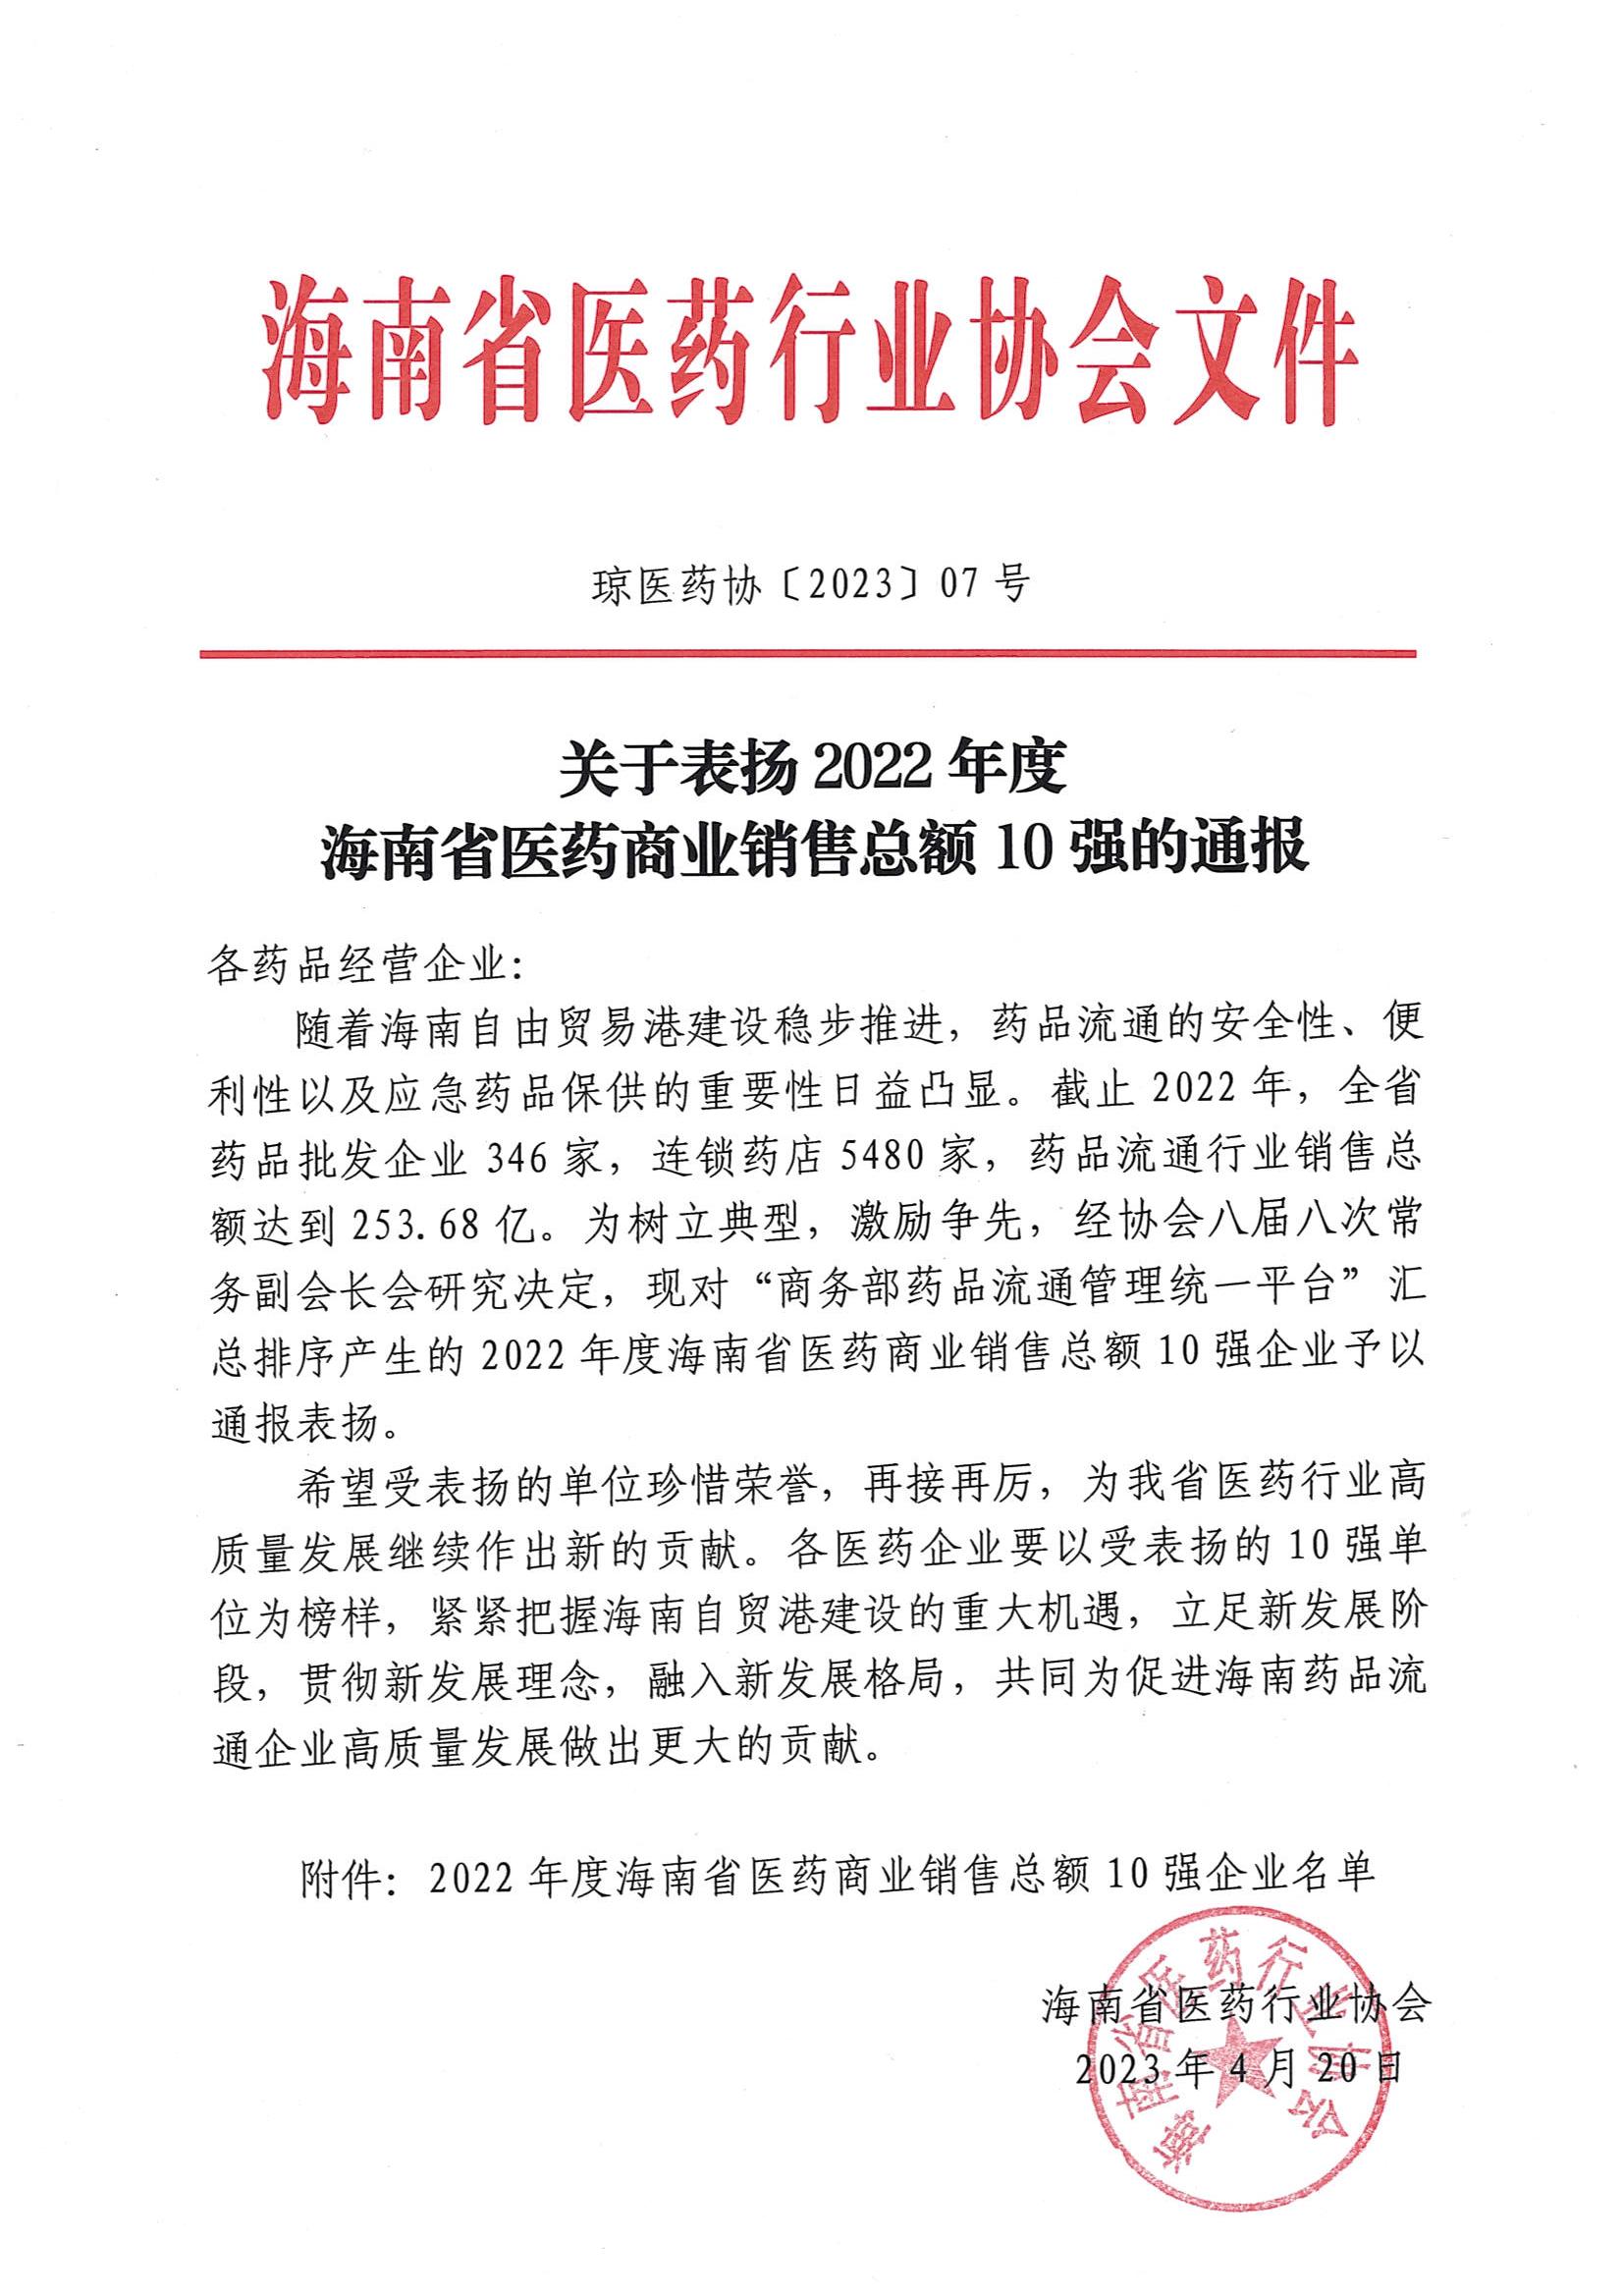 关于表扬2022年度海南省医药商业销售总额10强的通报_00.jpg